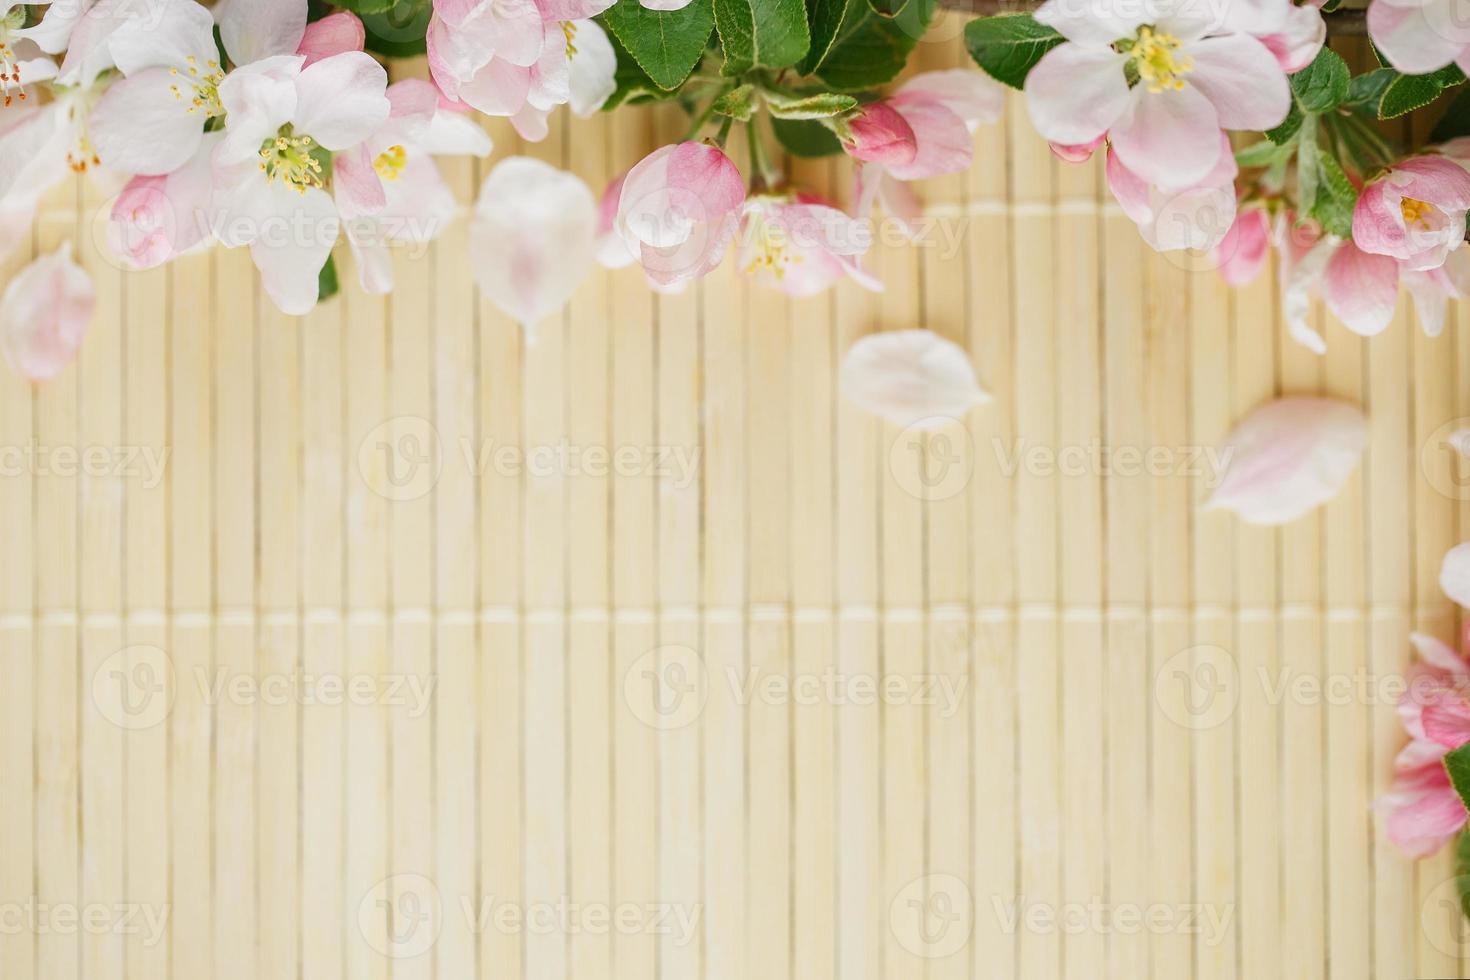 rahmen von frühlingsblumen von sakura auf bambushintergrund. schöne kirschblüte sakura im frühling foto